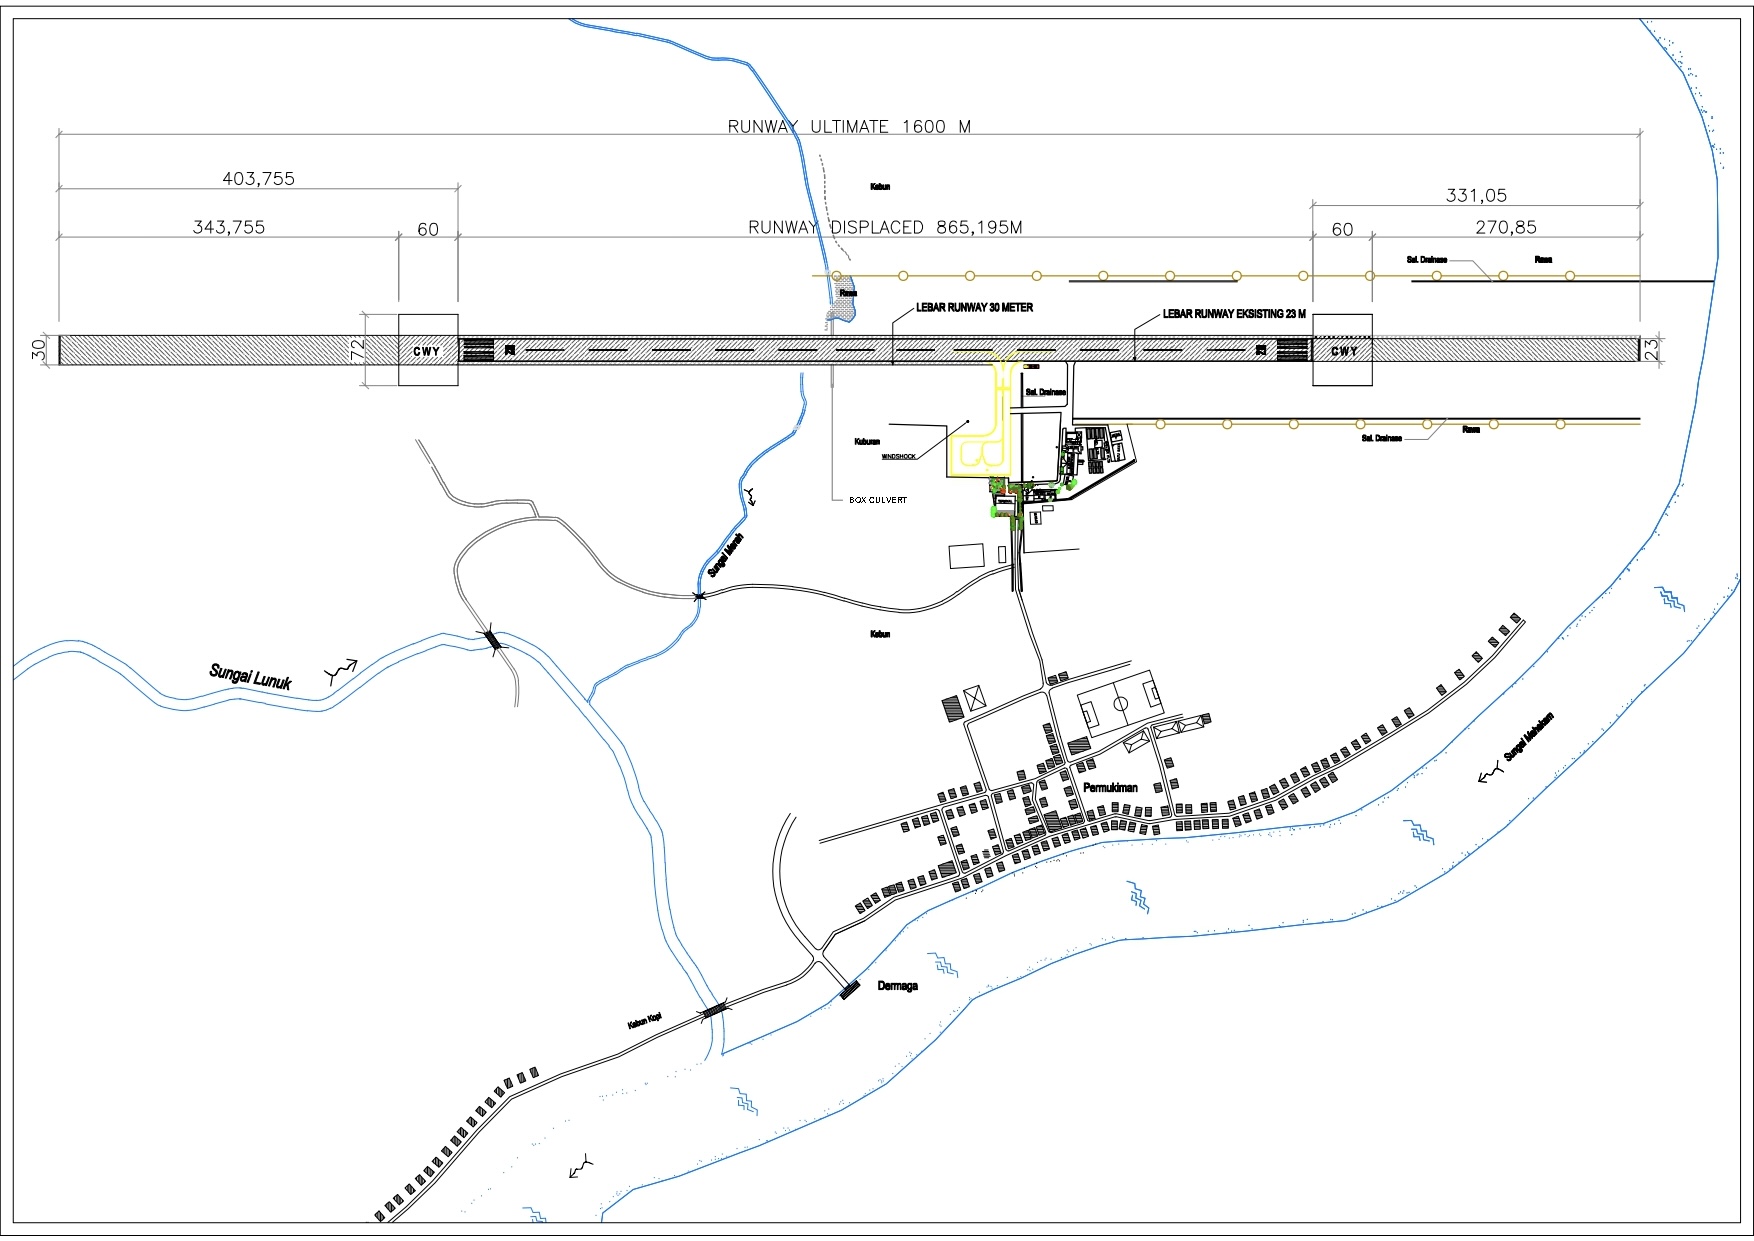 Gambar Peta Bandara Layout